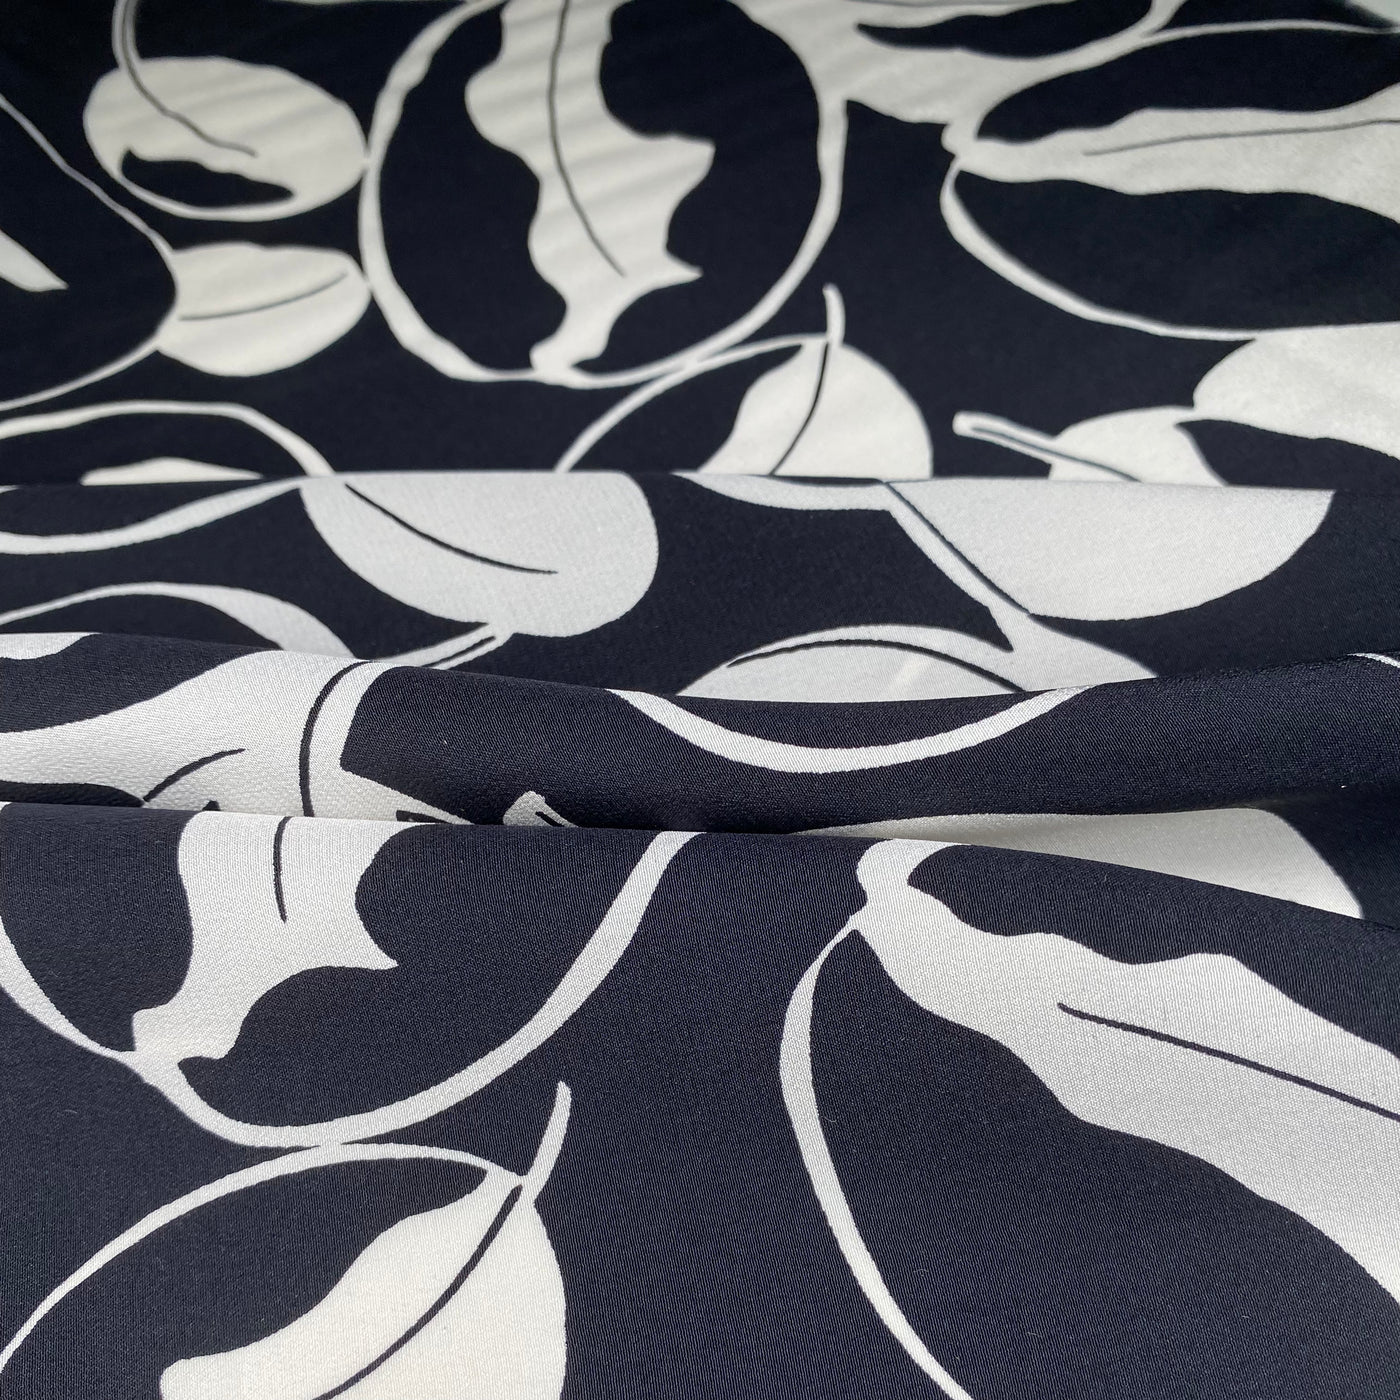 Printed Silk Georgette - Leaves - Black/White